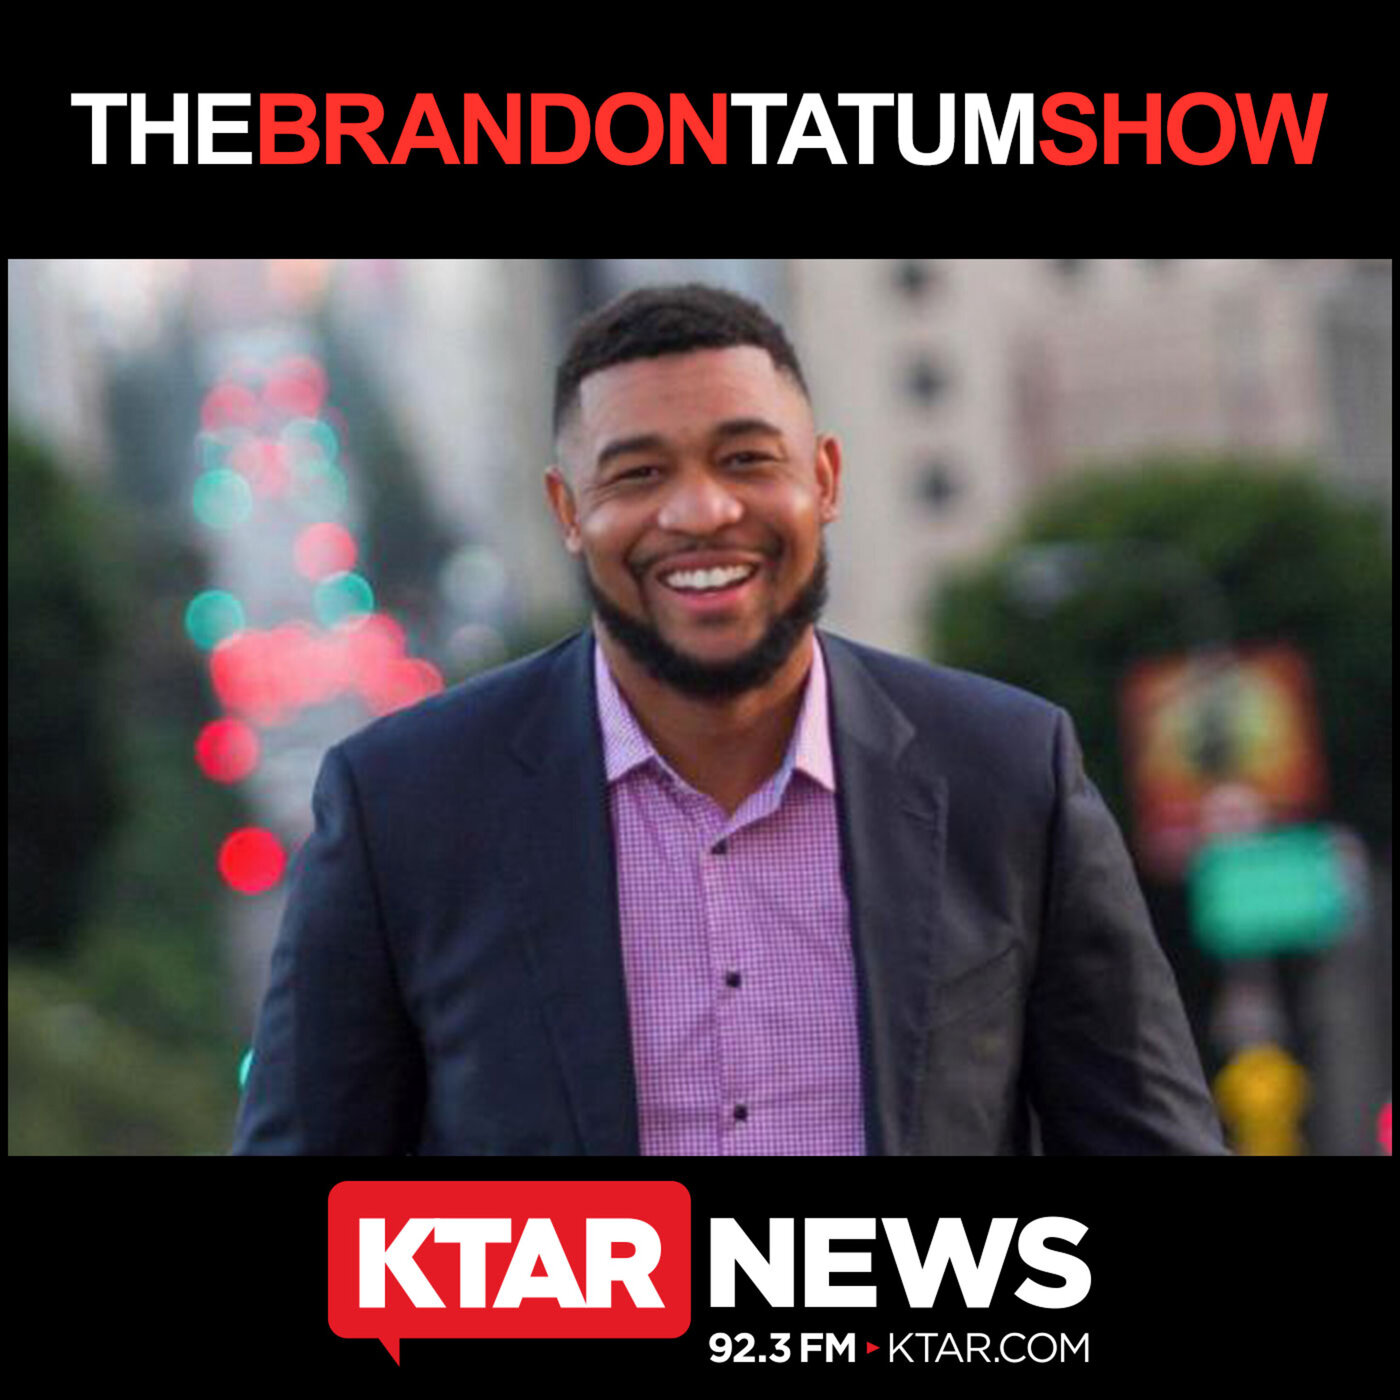 April 5, 2020 – The Brandon Tatum Show